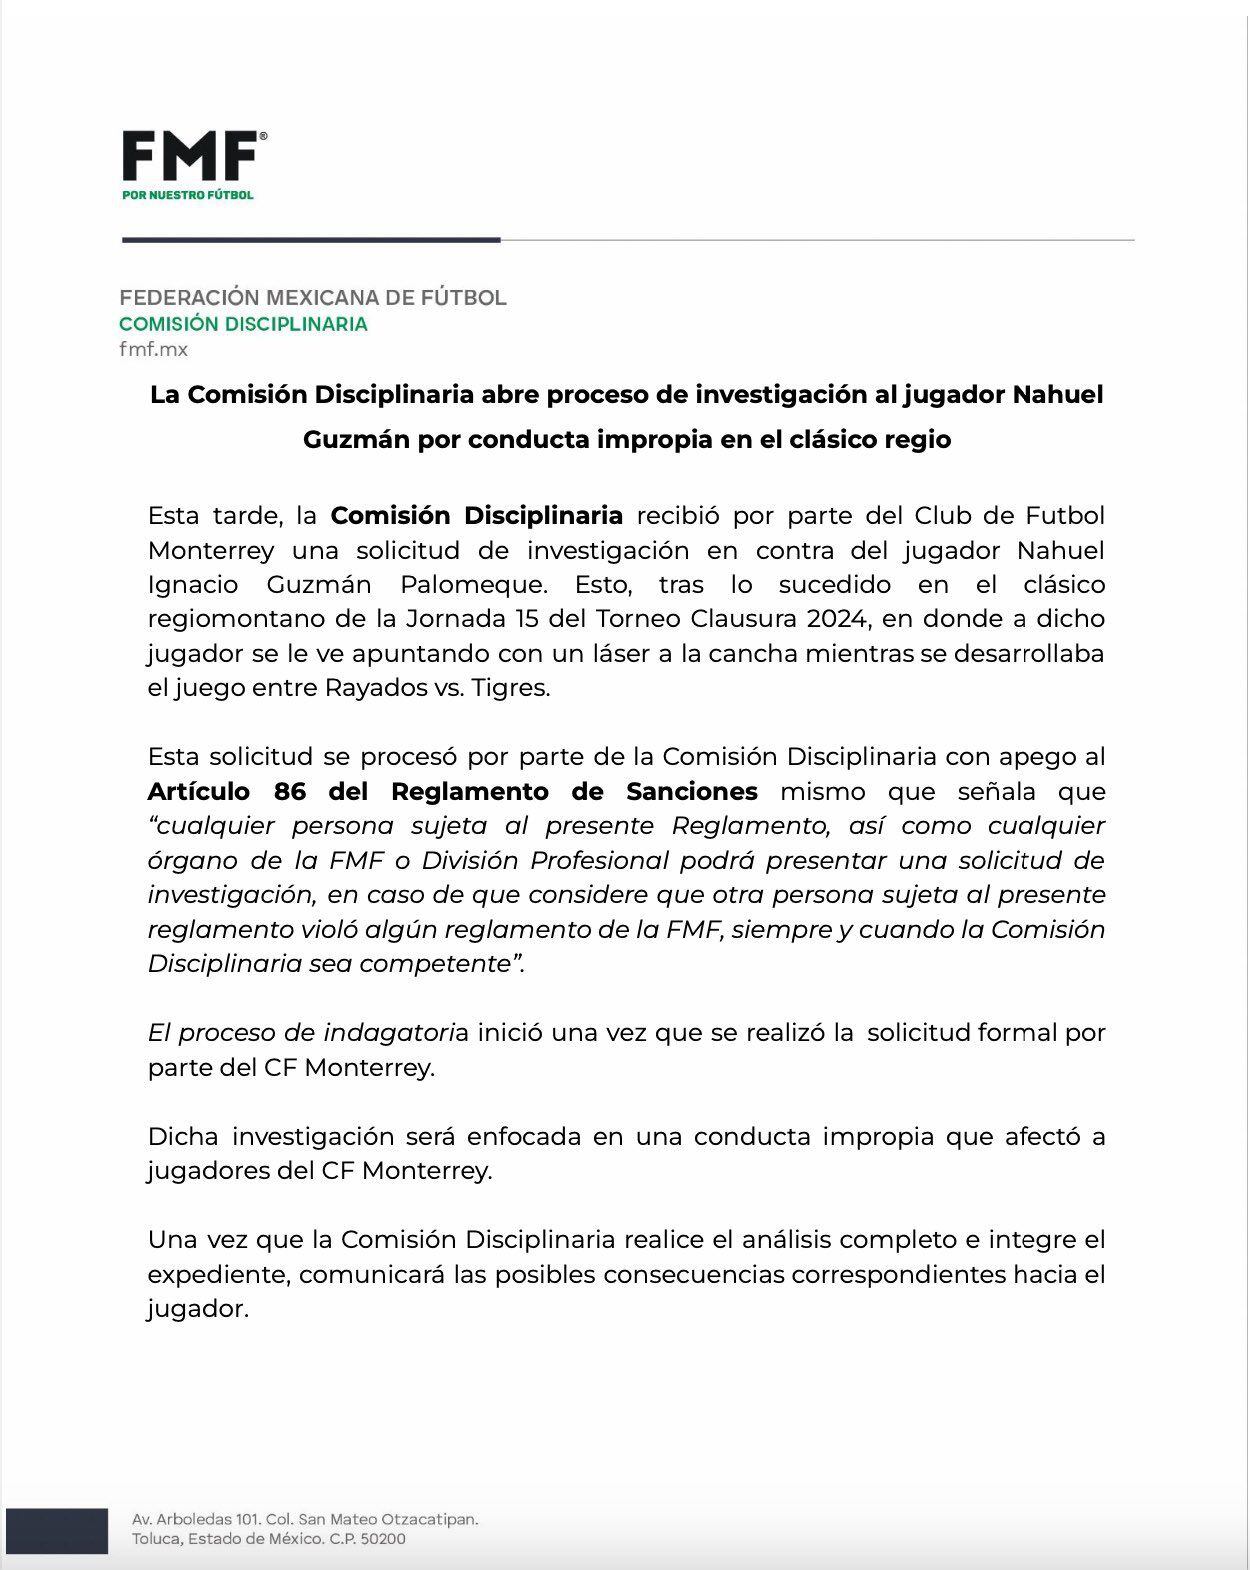 Nahuel Guzmán será investigado por la Comisión Disciplinaria de la FMF